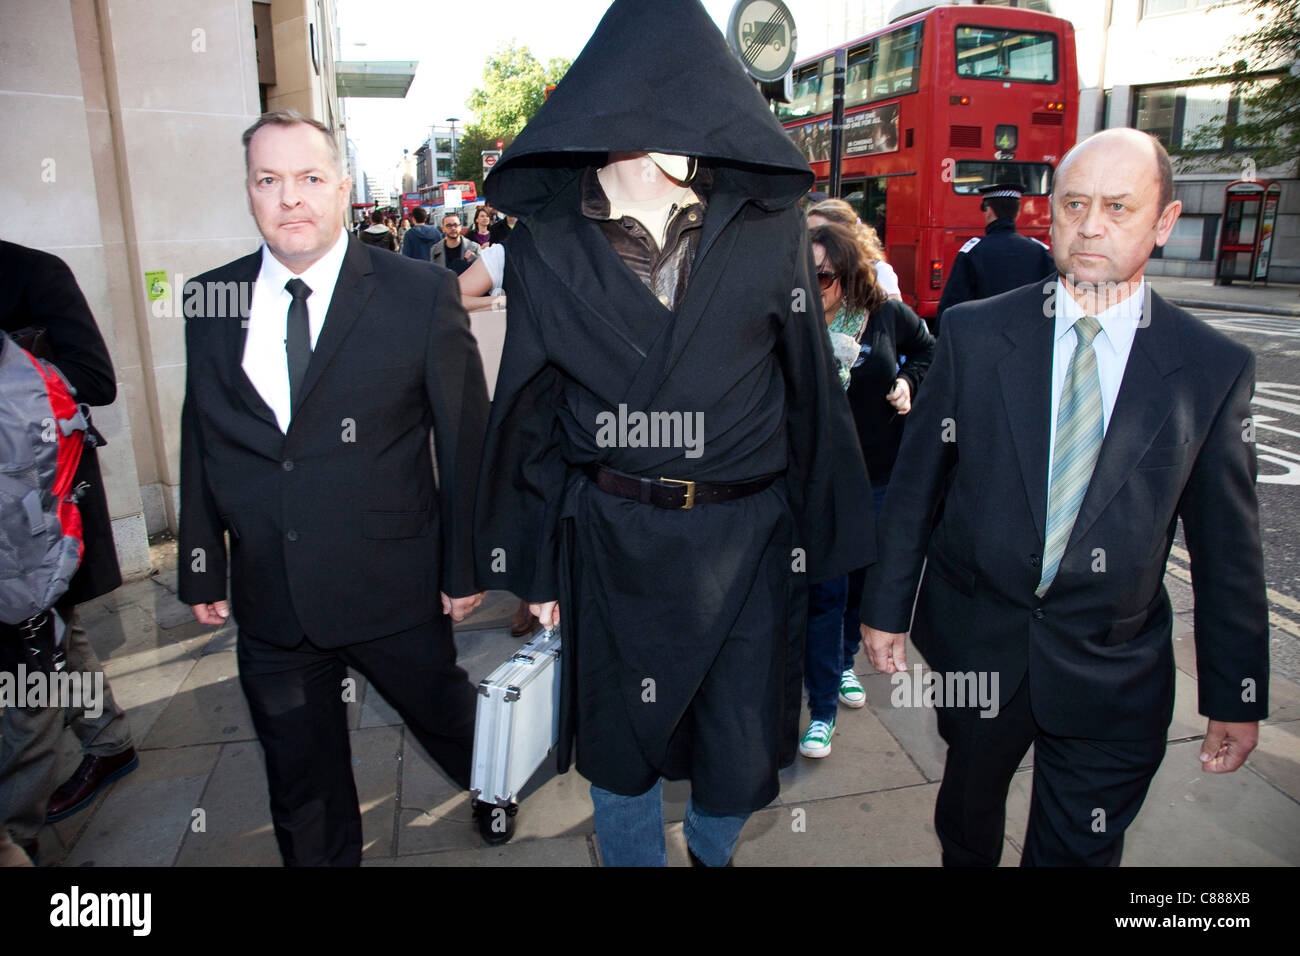 Julian Assange de WikiLeaks à la manifestation Occupy London 15 octobre 2011. Vu ici, il essaie de passer à travers les lignes de police portant une cape noire, le capot et le masque. Il a immédiatement demandé de retirer le masque où il a été traîné dans sur, interrogé et relâché. Banque D'Images